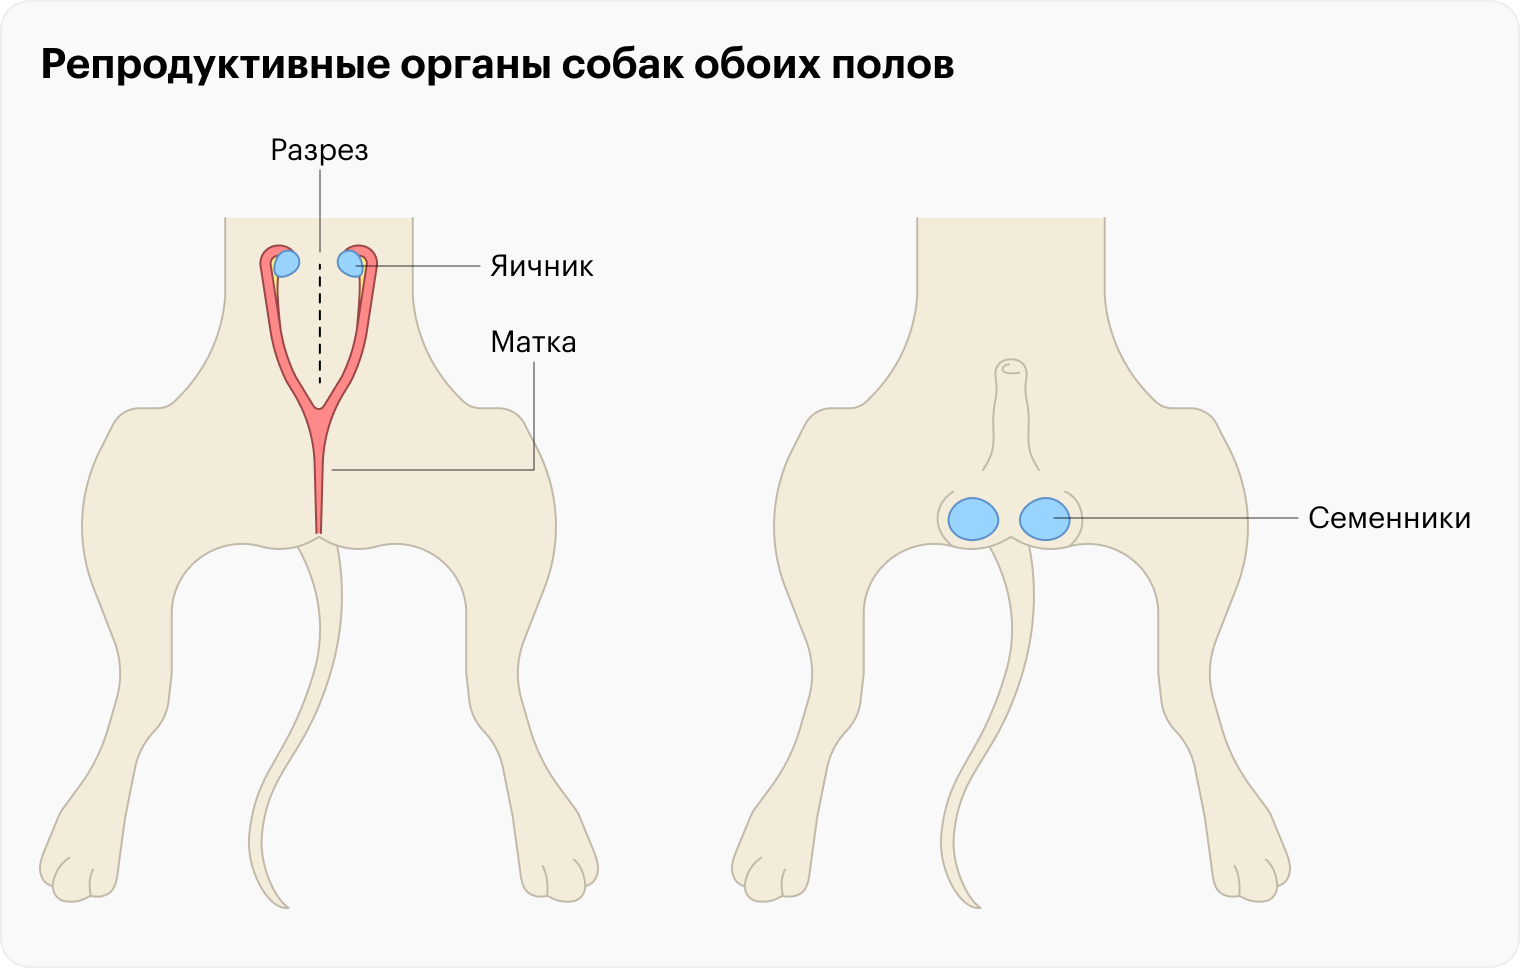 Это упрощенное изображение репродуктивных органов собак обоих полов, которые удаляют во время кастрации